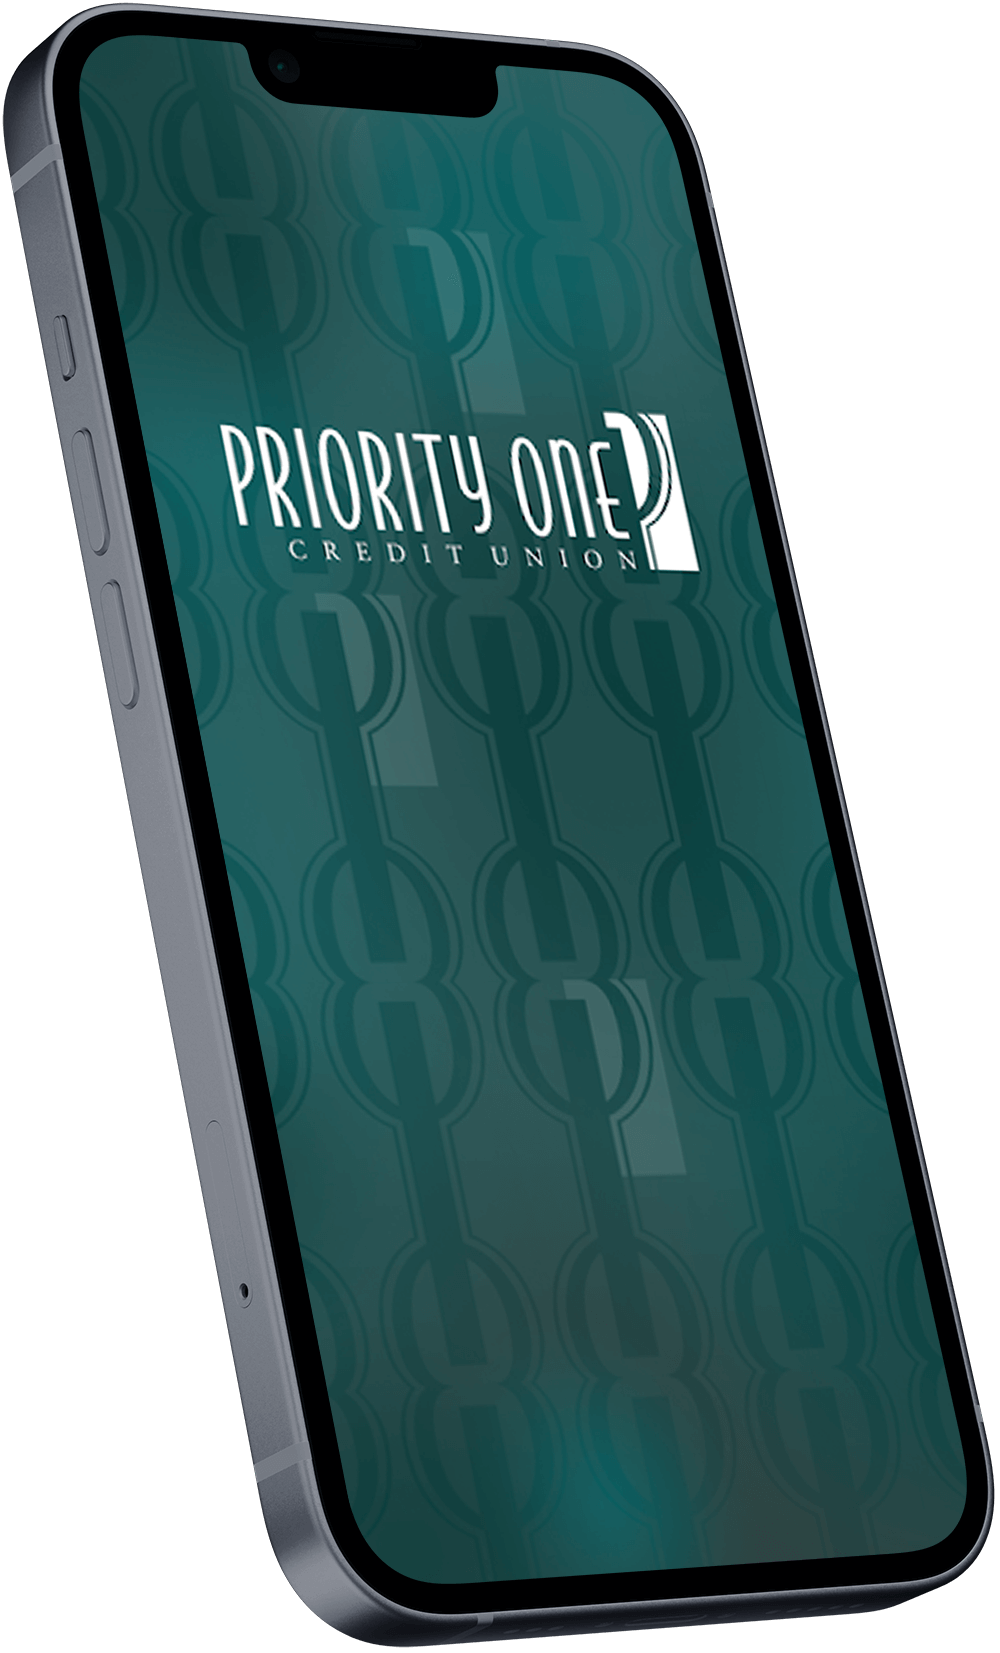 Priority One Mobile App Mockup